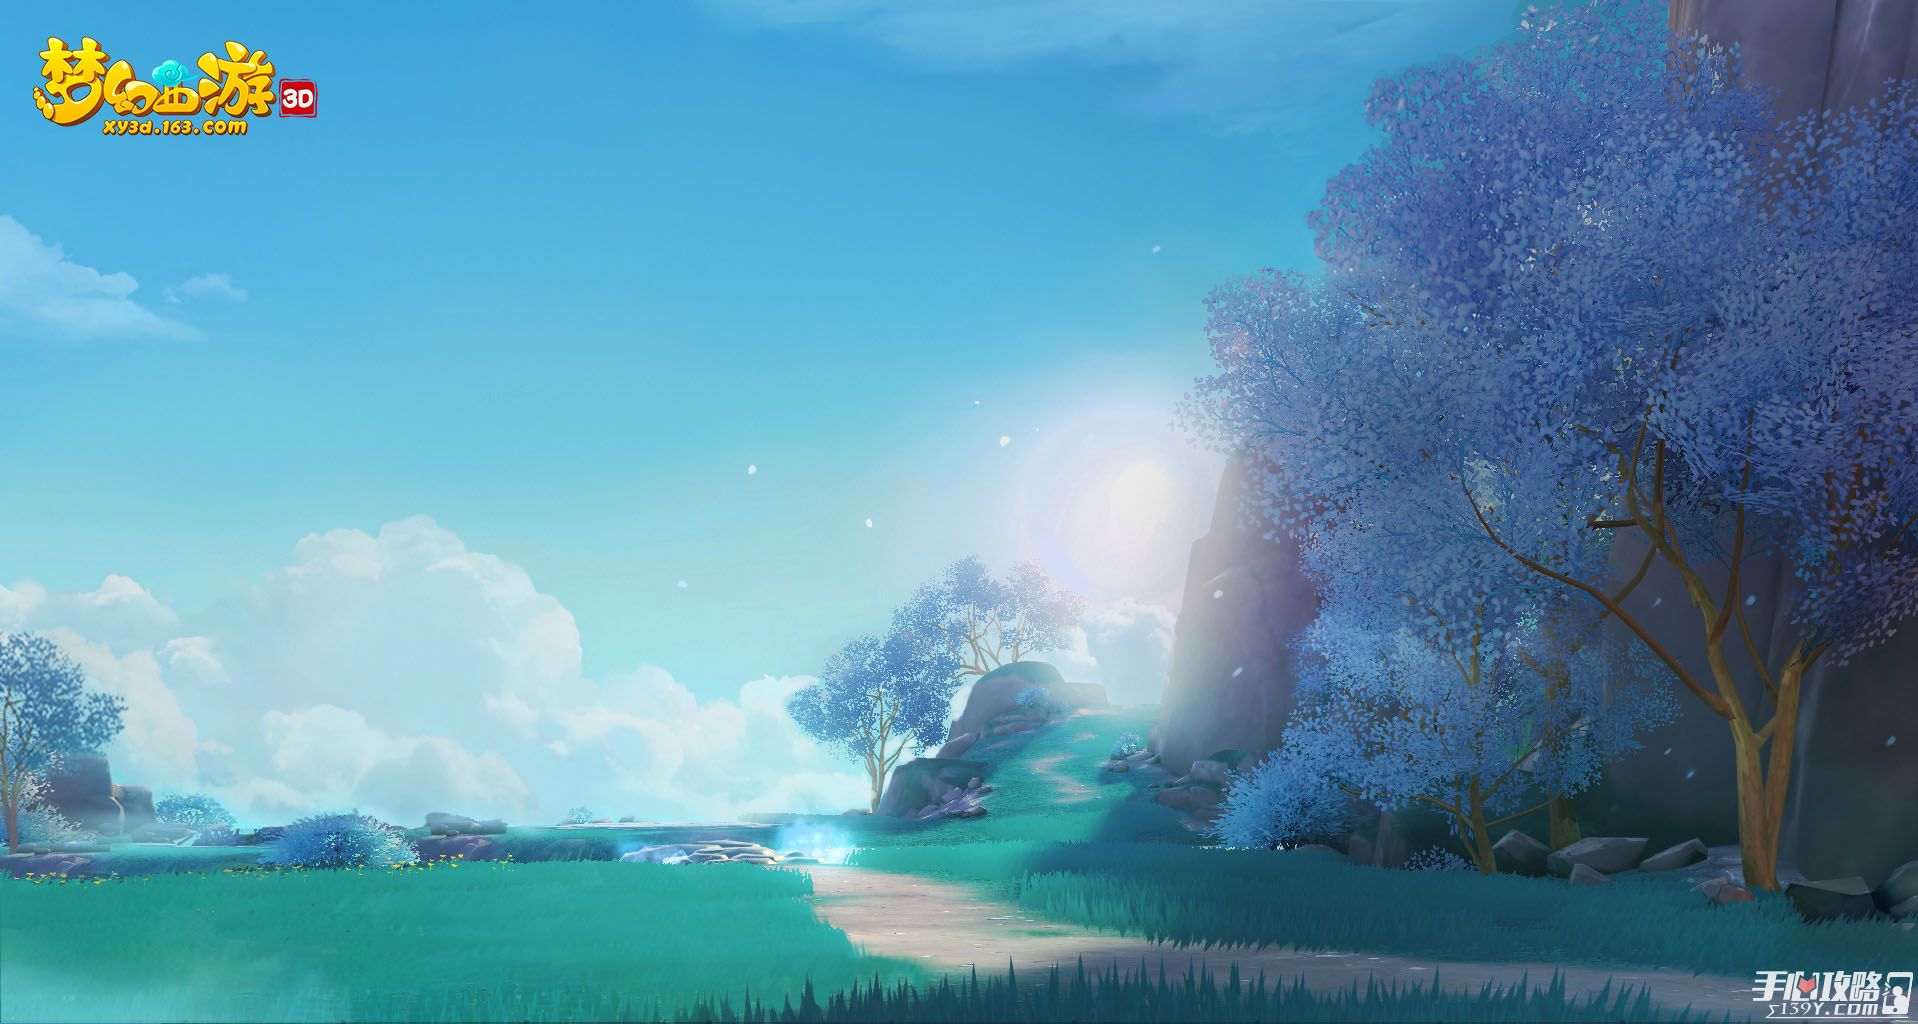 《梦幻西游》3D版手游亮点抢先看 梦幻西游品牌发布会7月6日开幕3